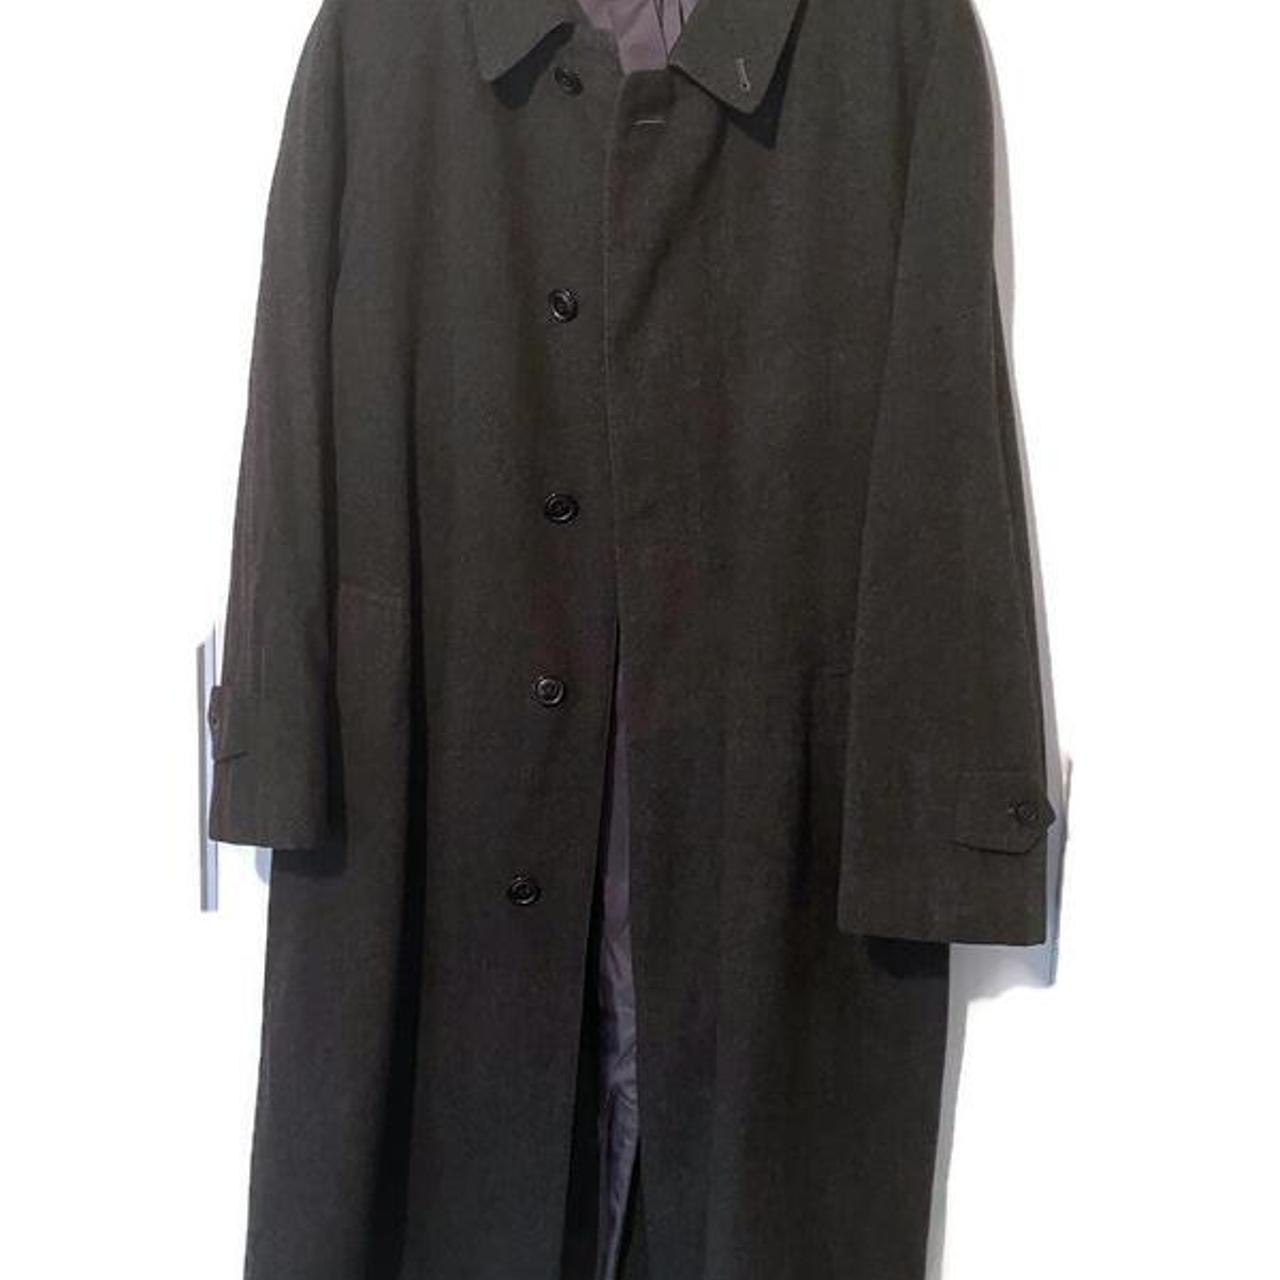 Very rare and stunning vintage Balmacaan overcoat... - Depop